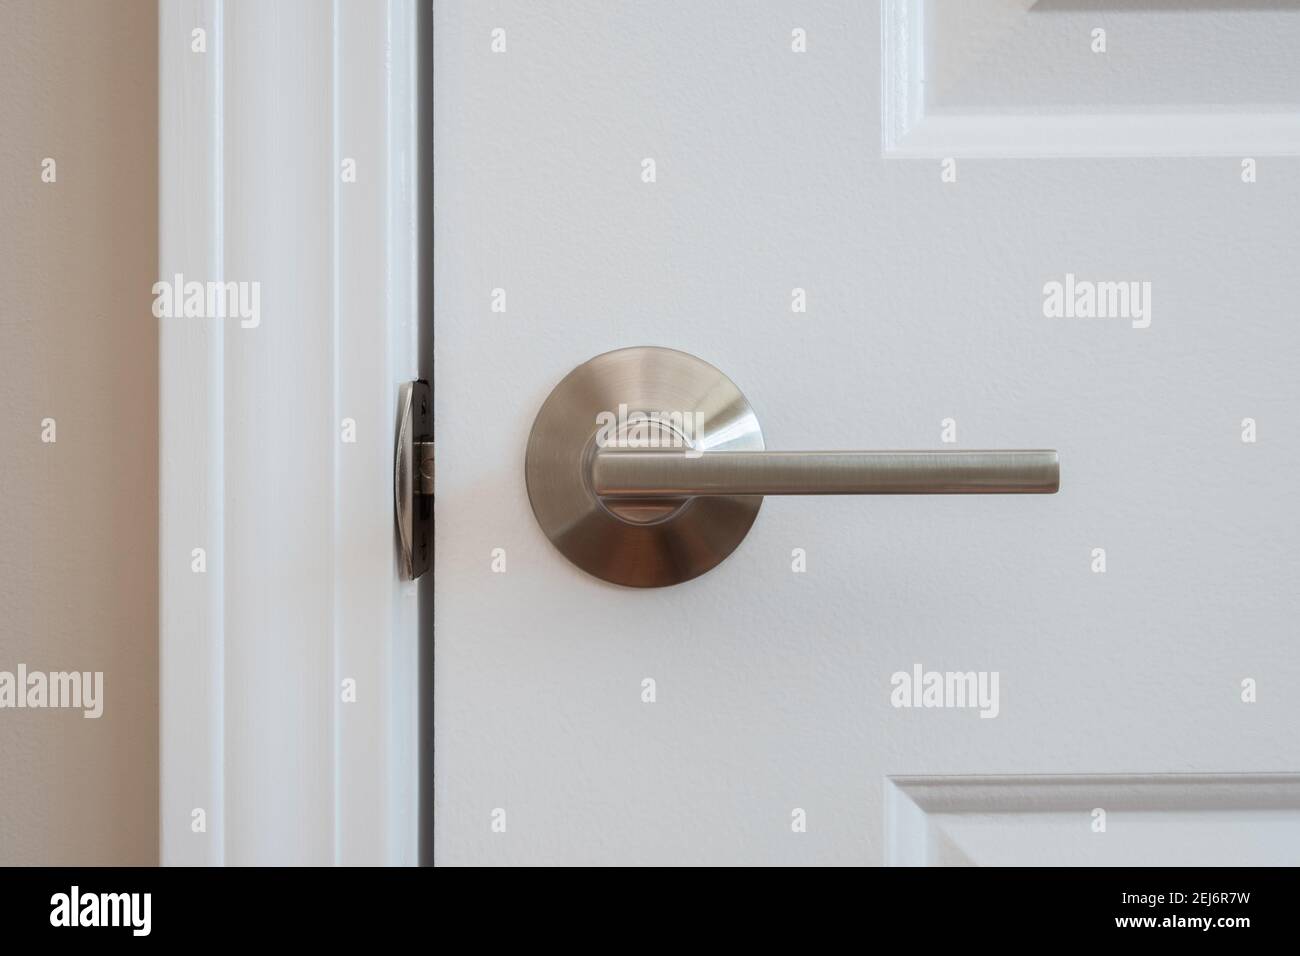 Photographie d'un levier de porte de placard en nickel de style moderne Banque D'Images